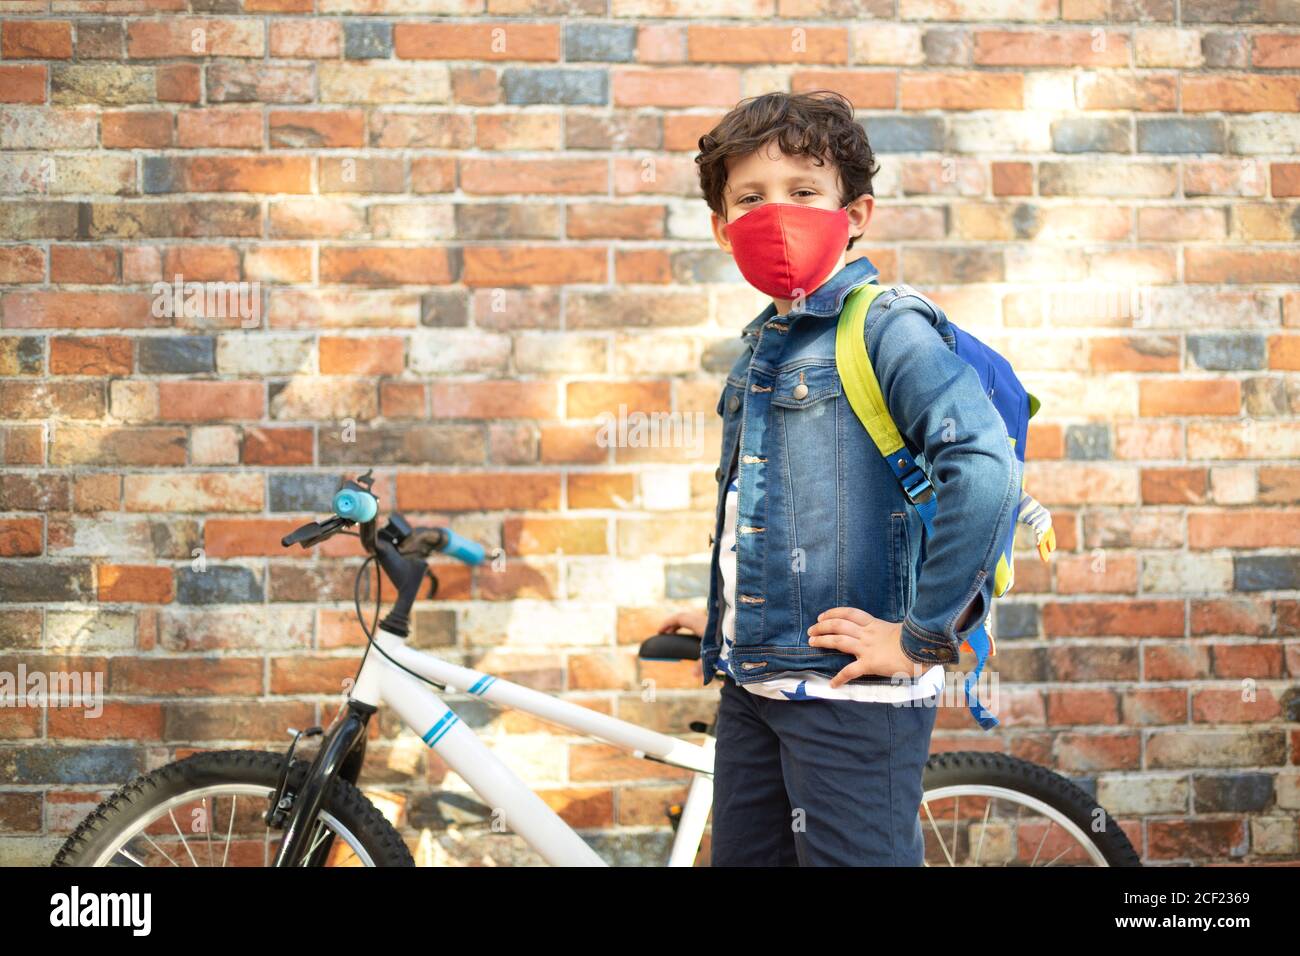 Petit garçon avec son vélo prêt à aller à l'école. Il est dans la rue et porte un masque. Banque D'Images